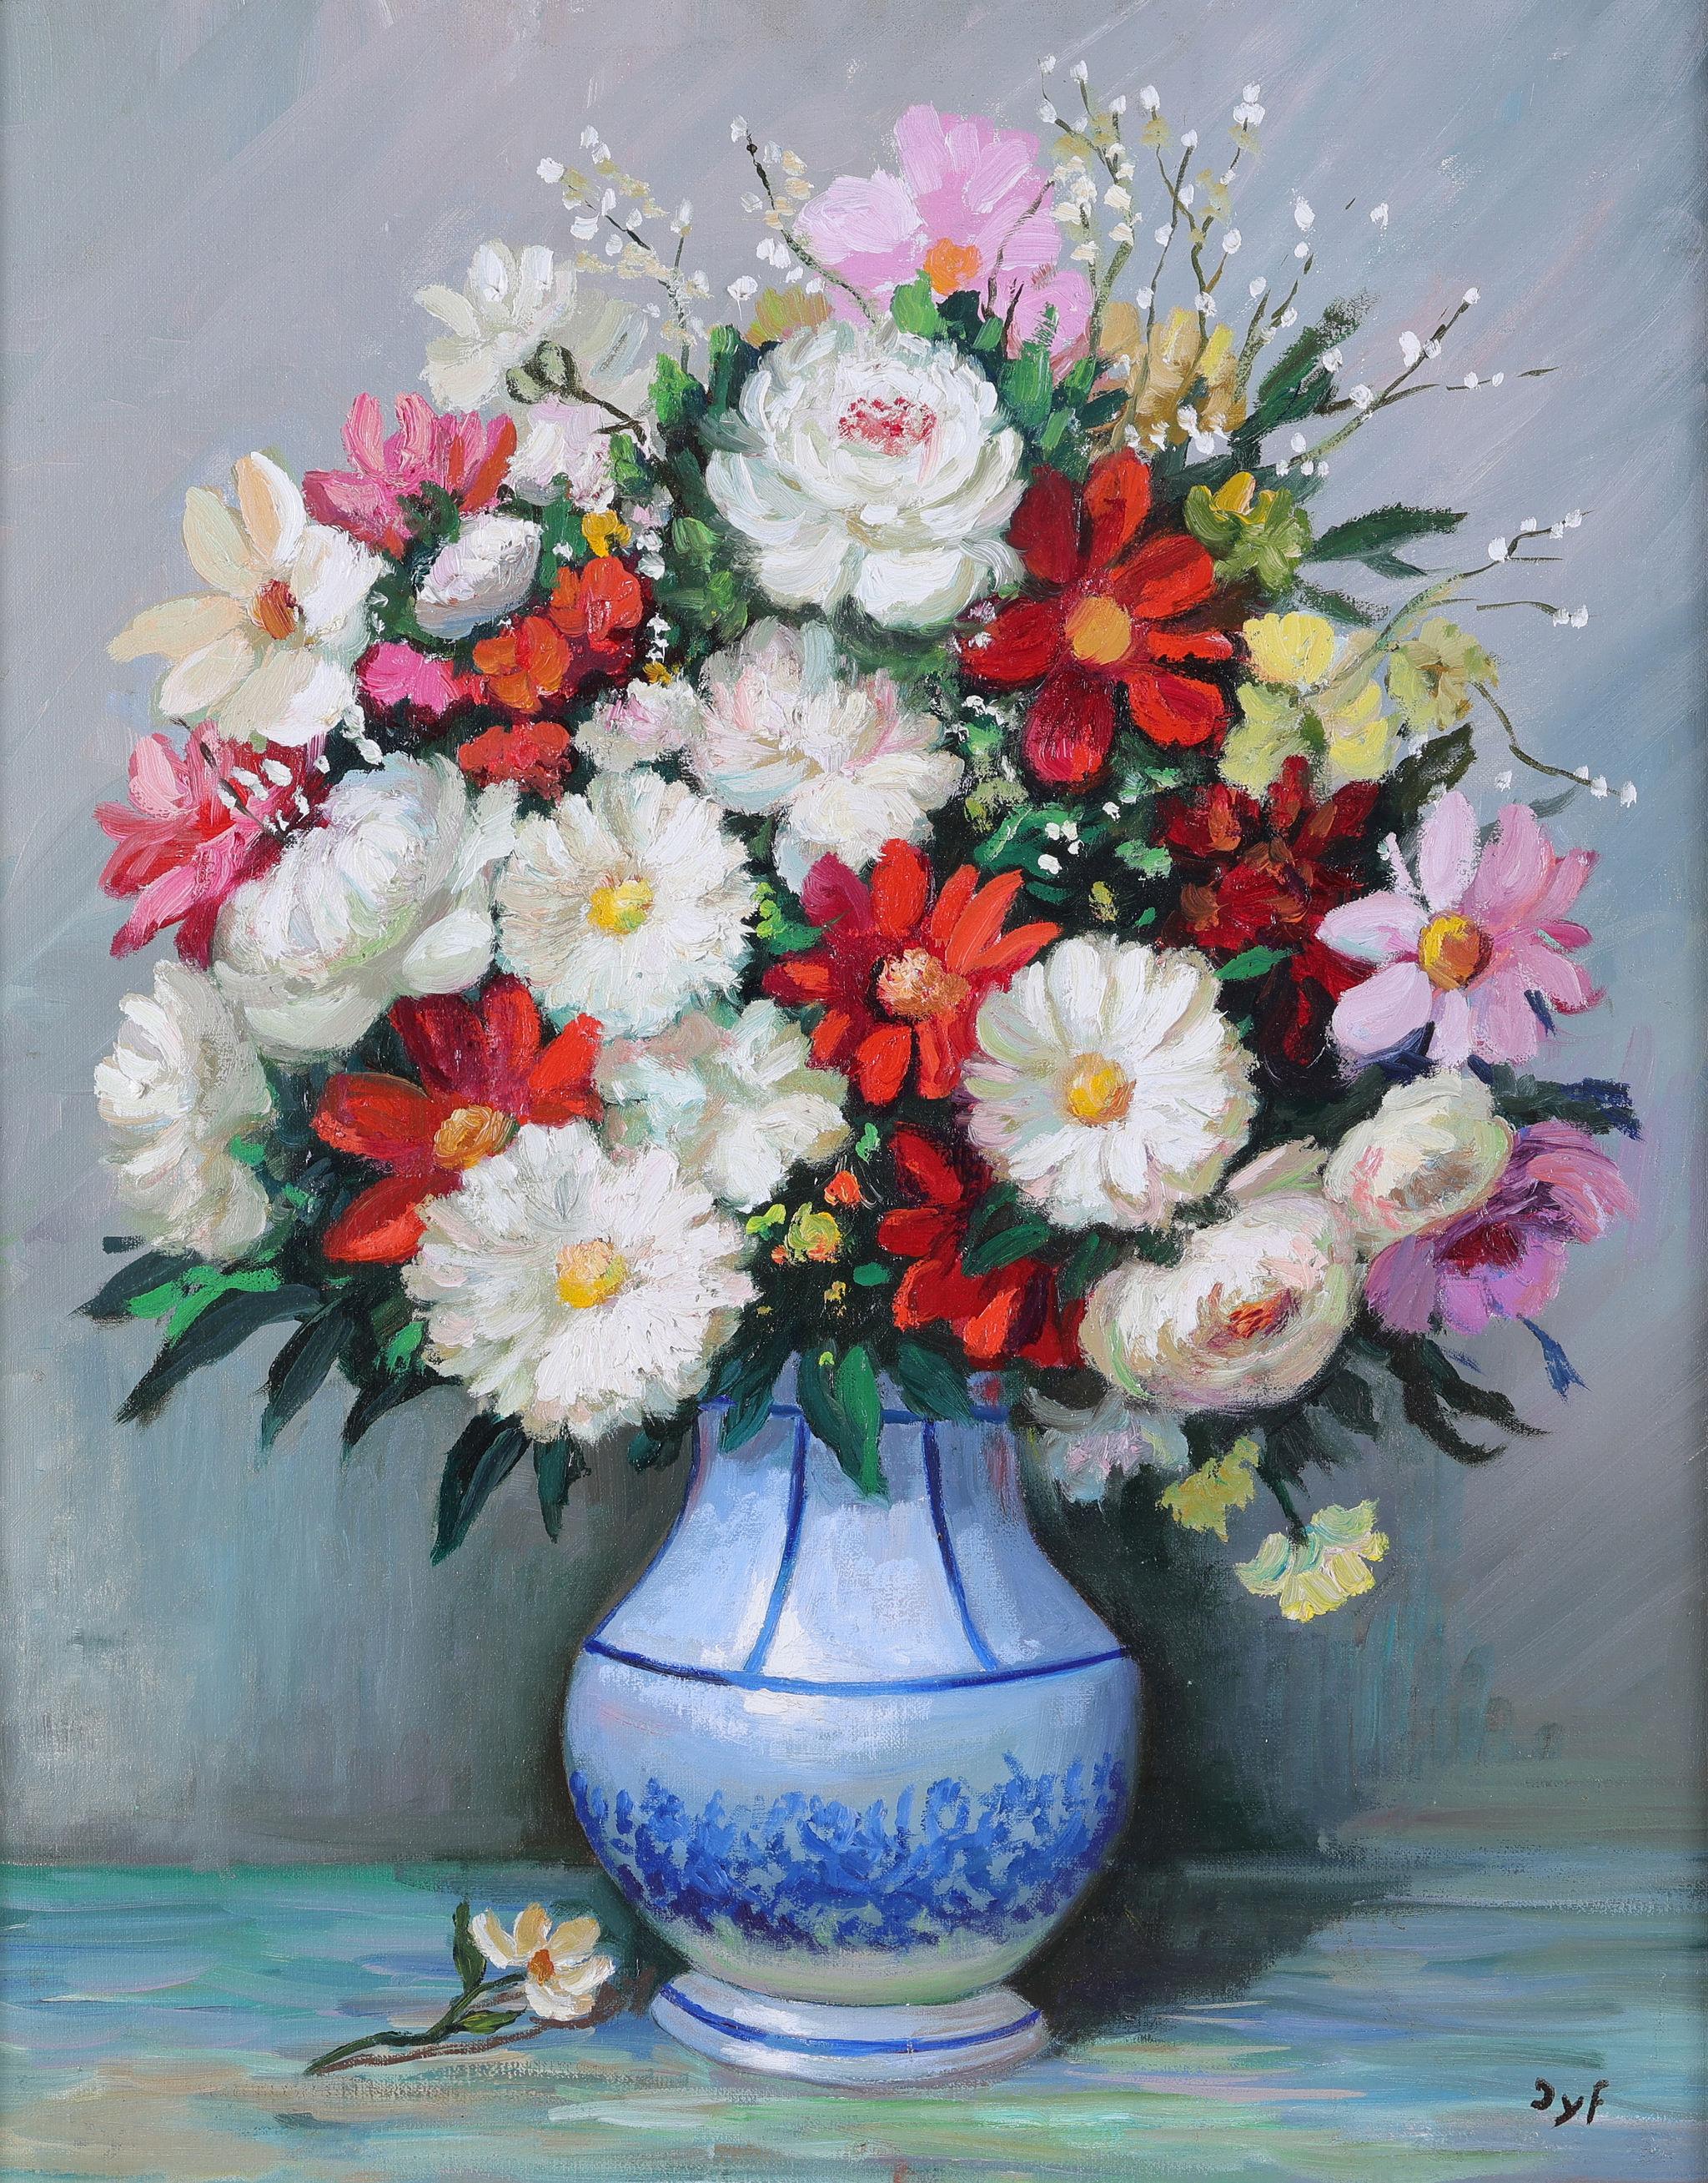 Un Bouquet de Fleurs Spectaculaire - Painting by Marcel Dyf